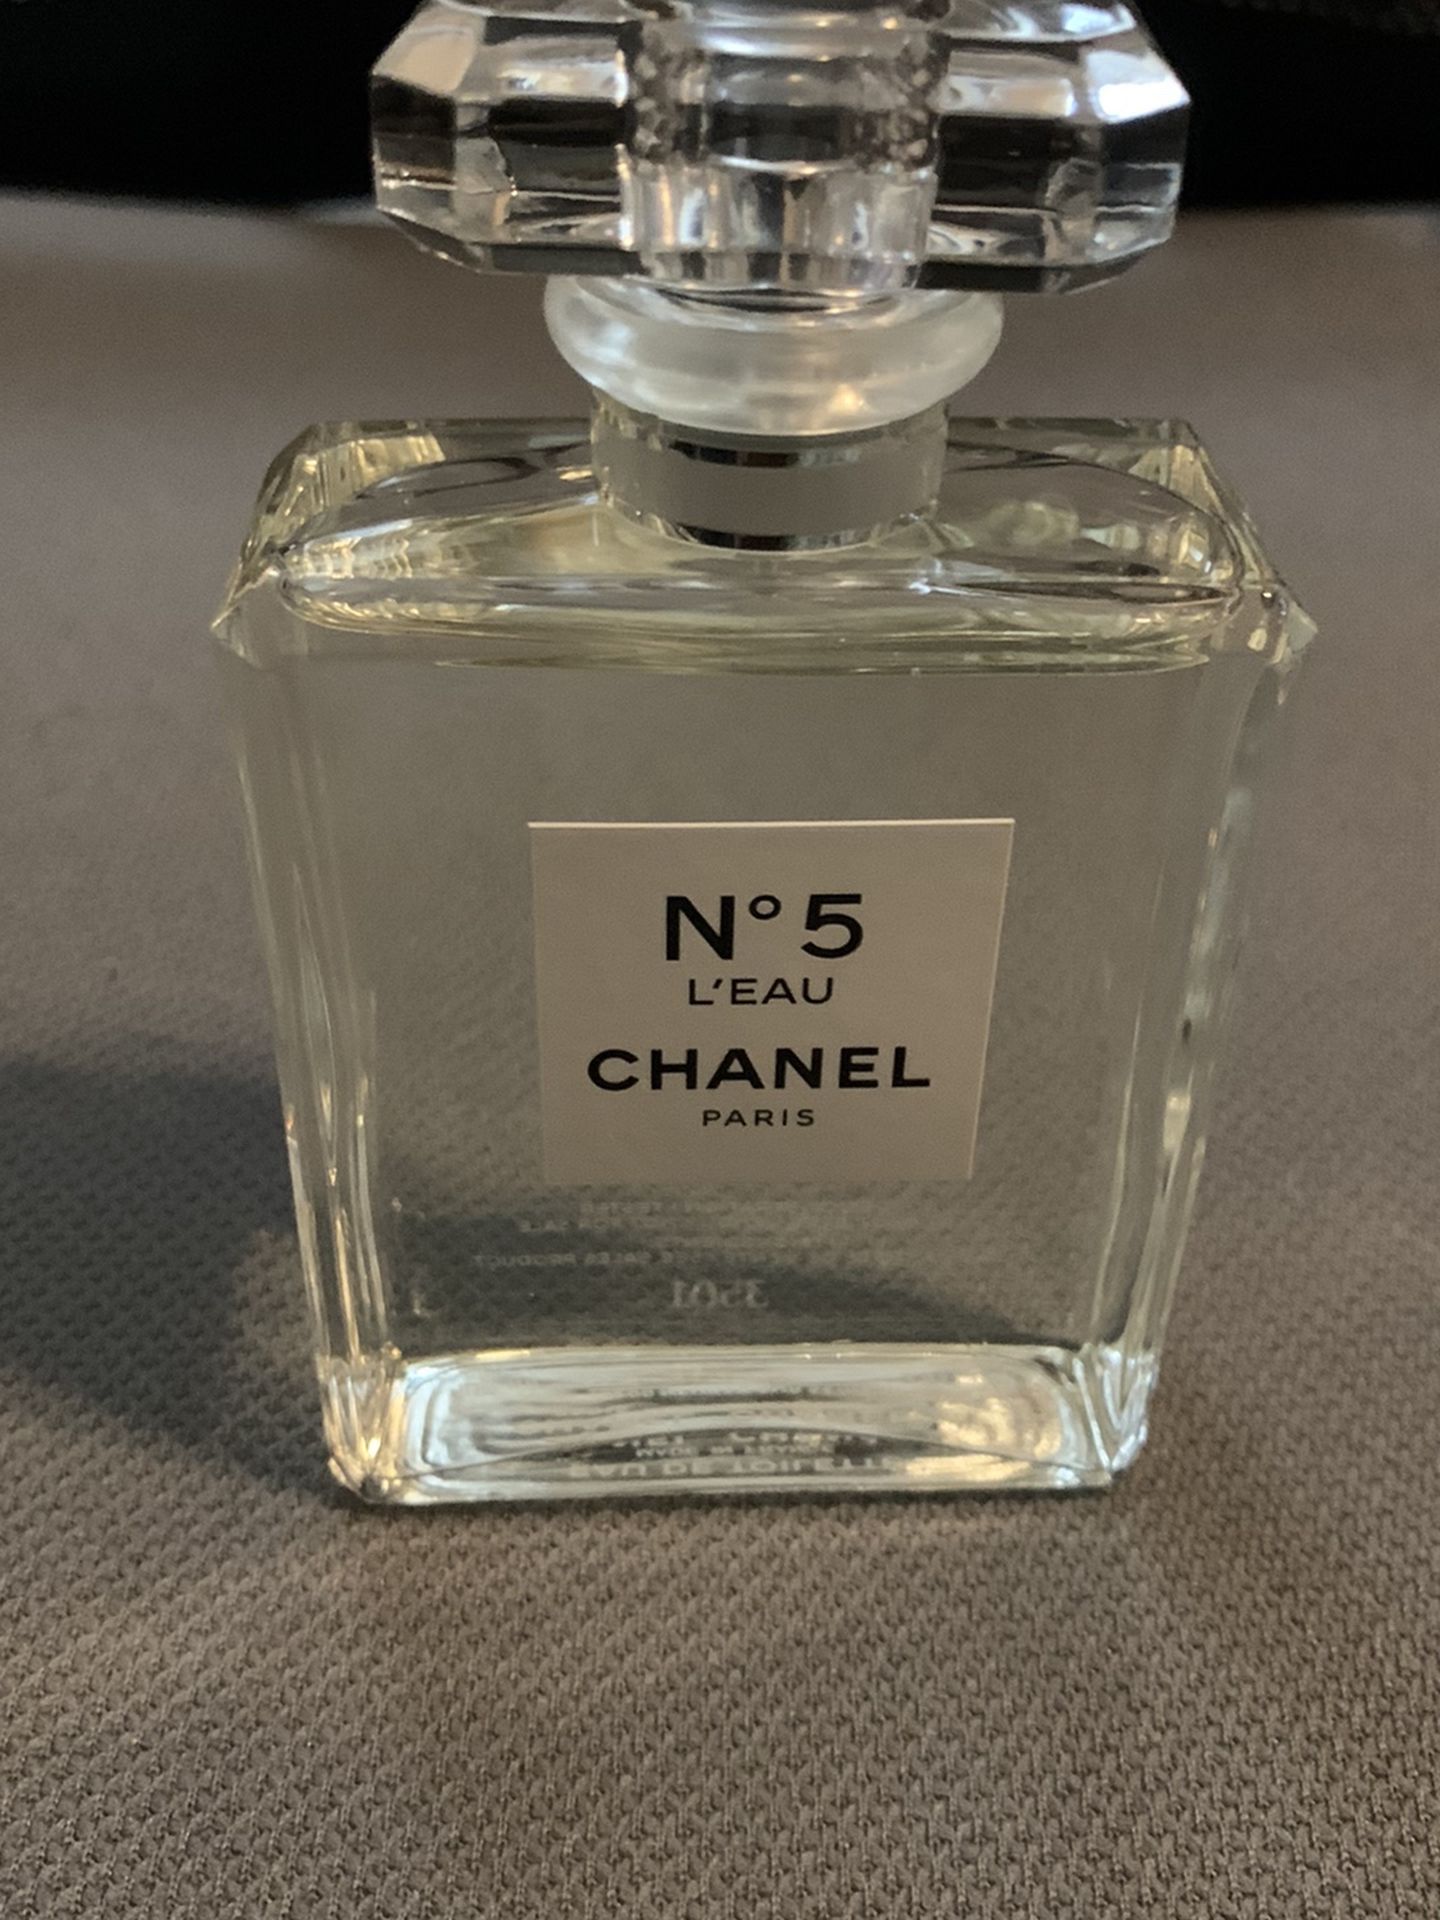 Chanel No 5 L’ Eau Perfume! Brand new!